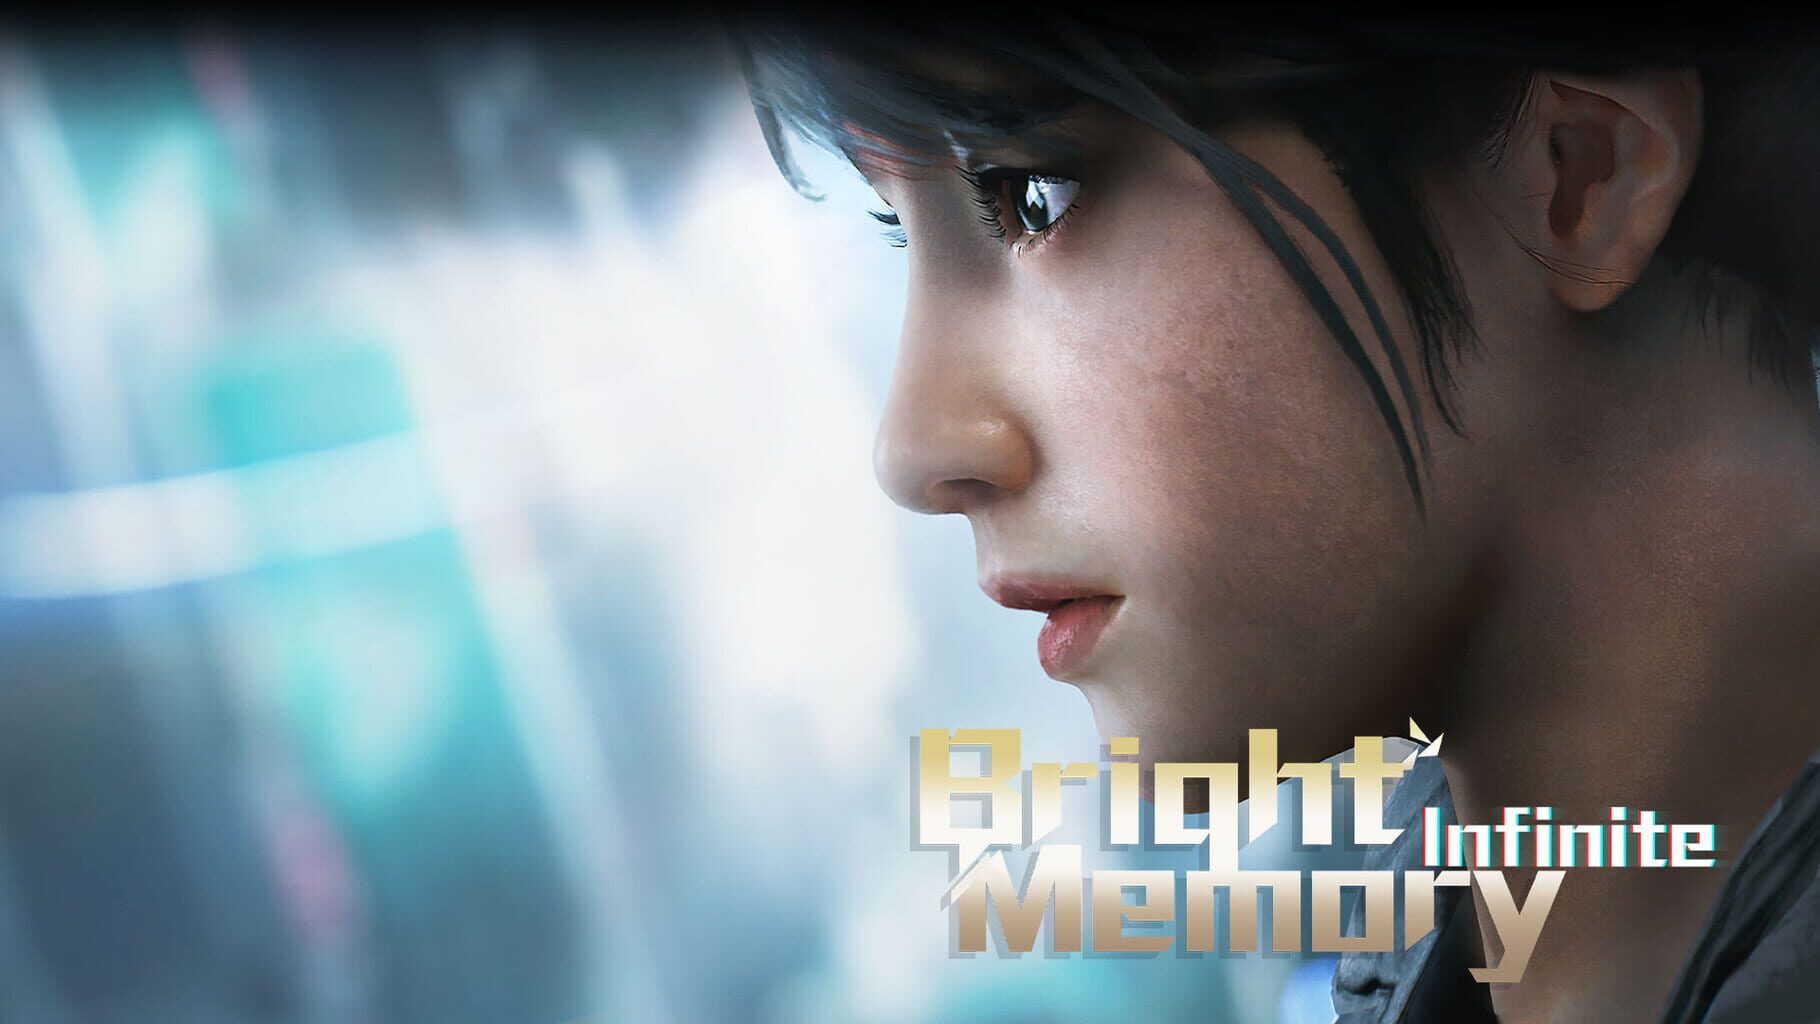 Bright Memory: Infinite artwork